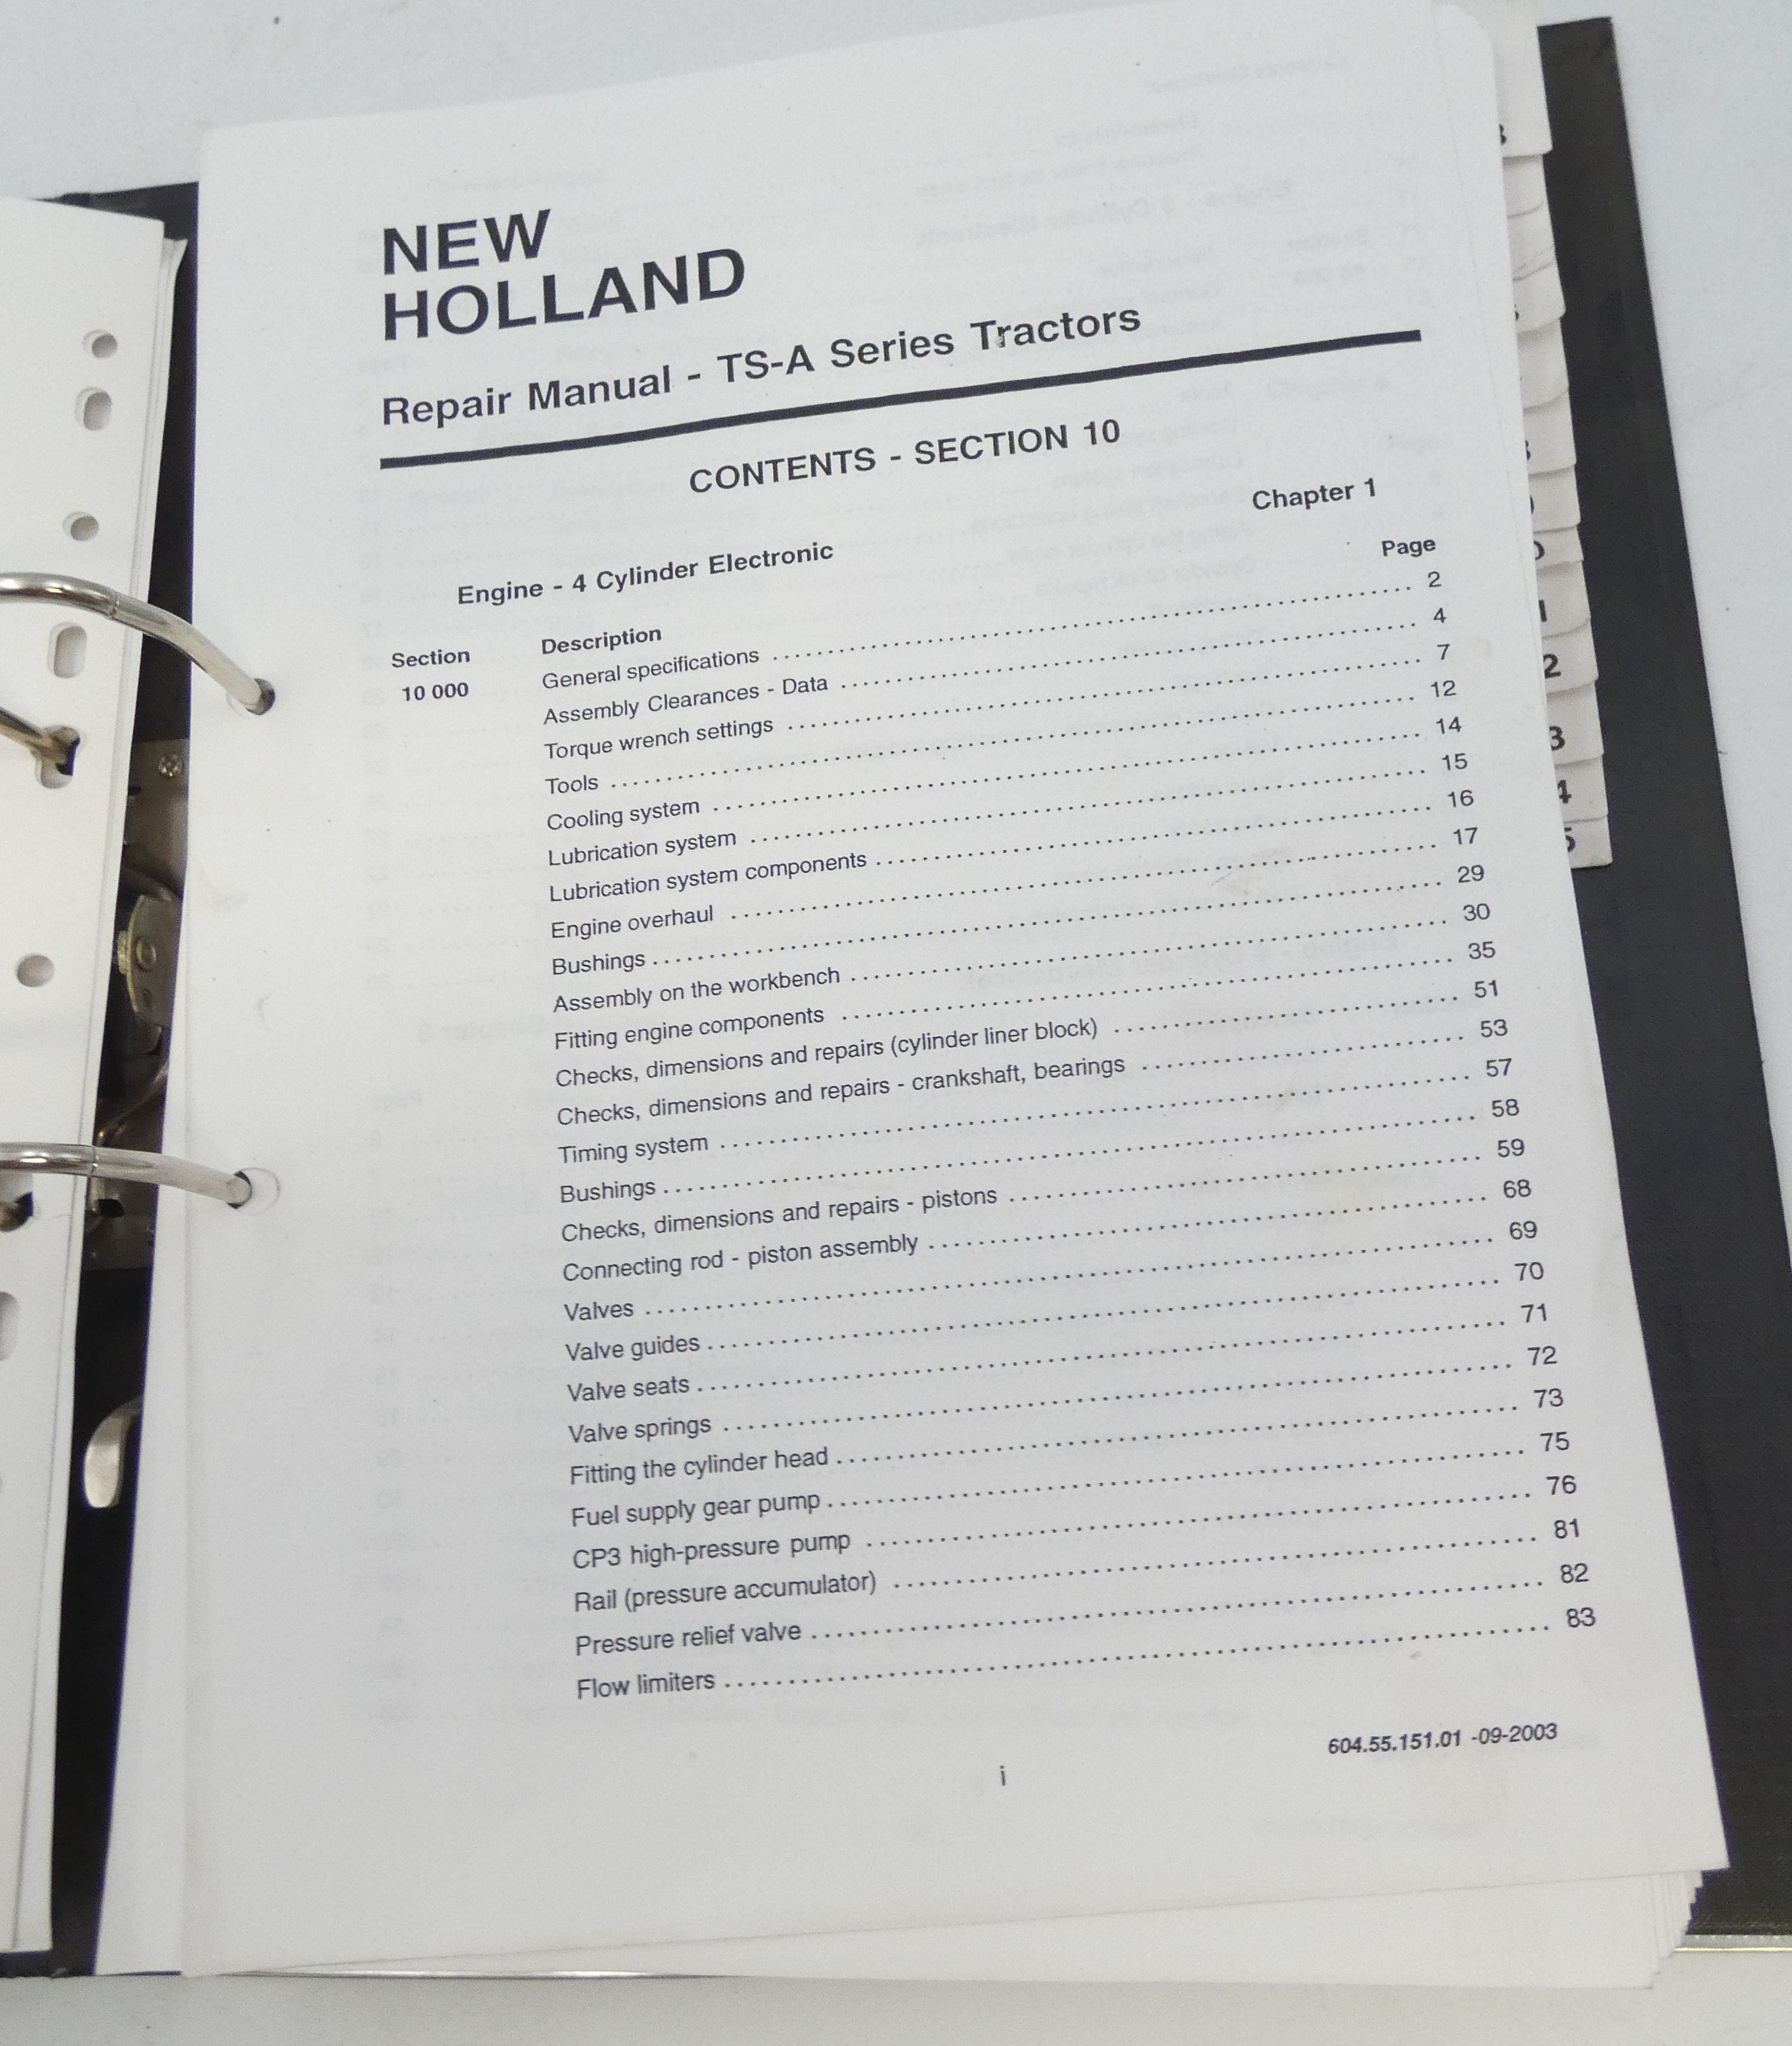 New Holland TS-A series tractors repair manual